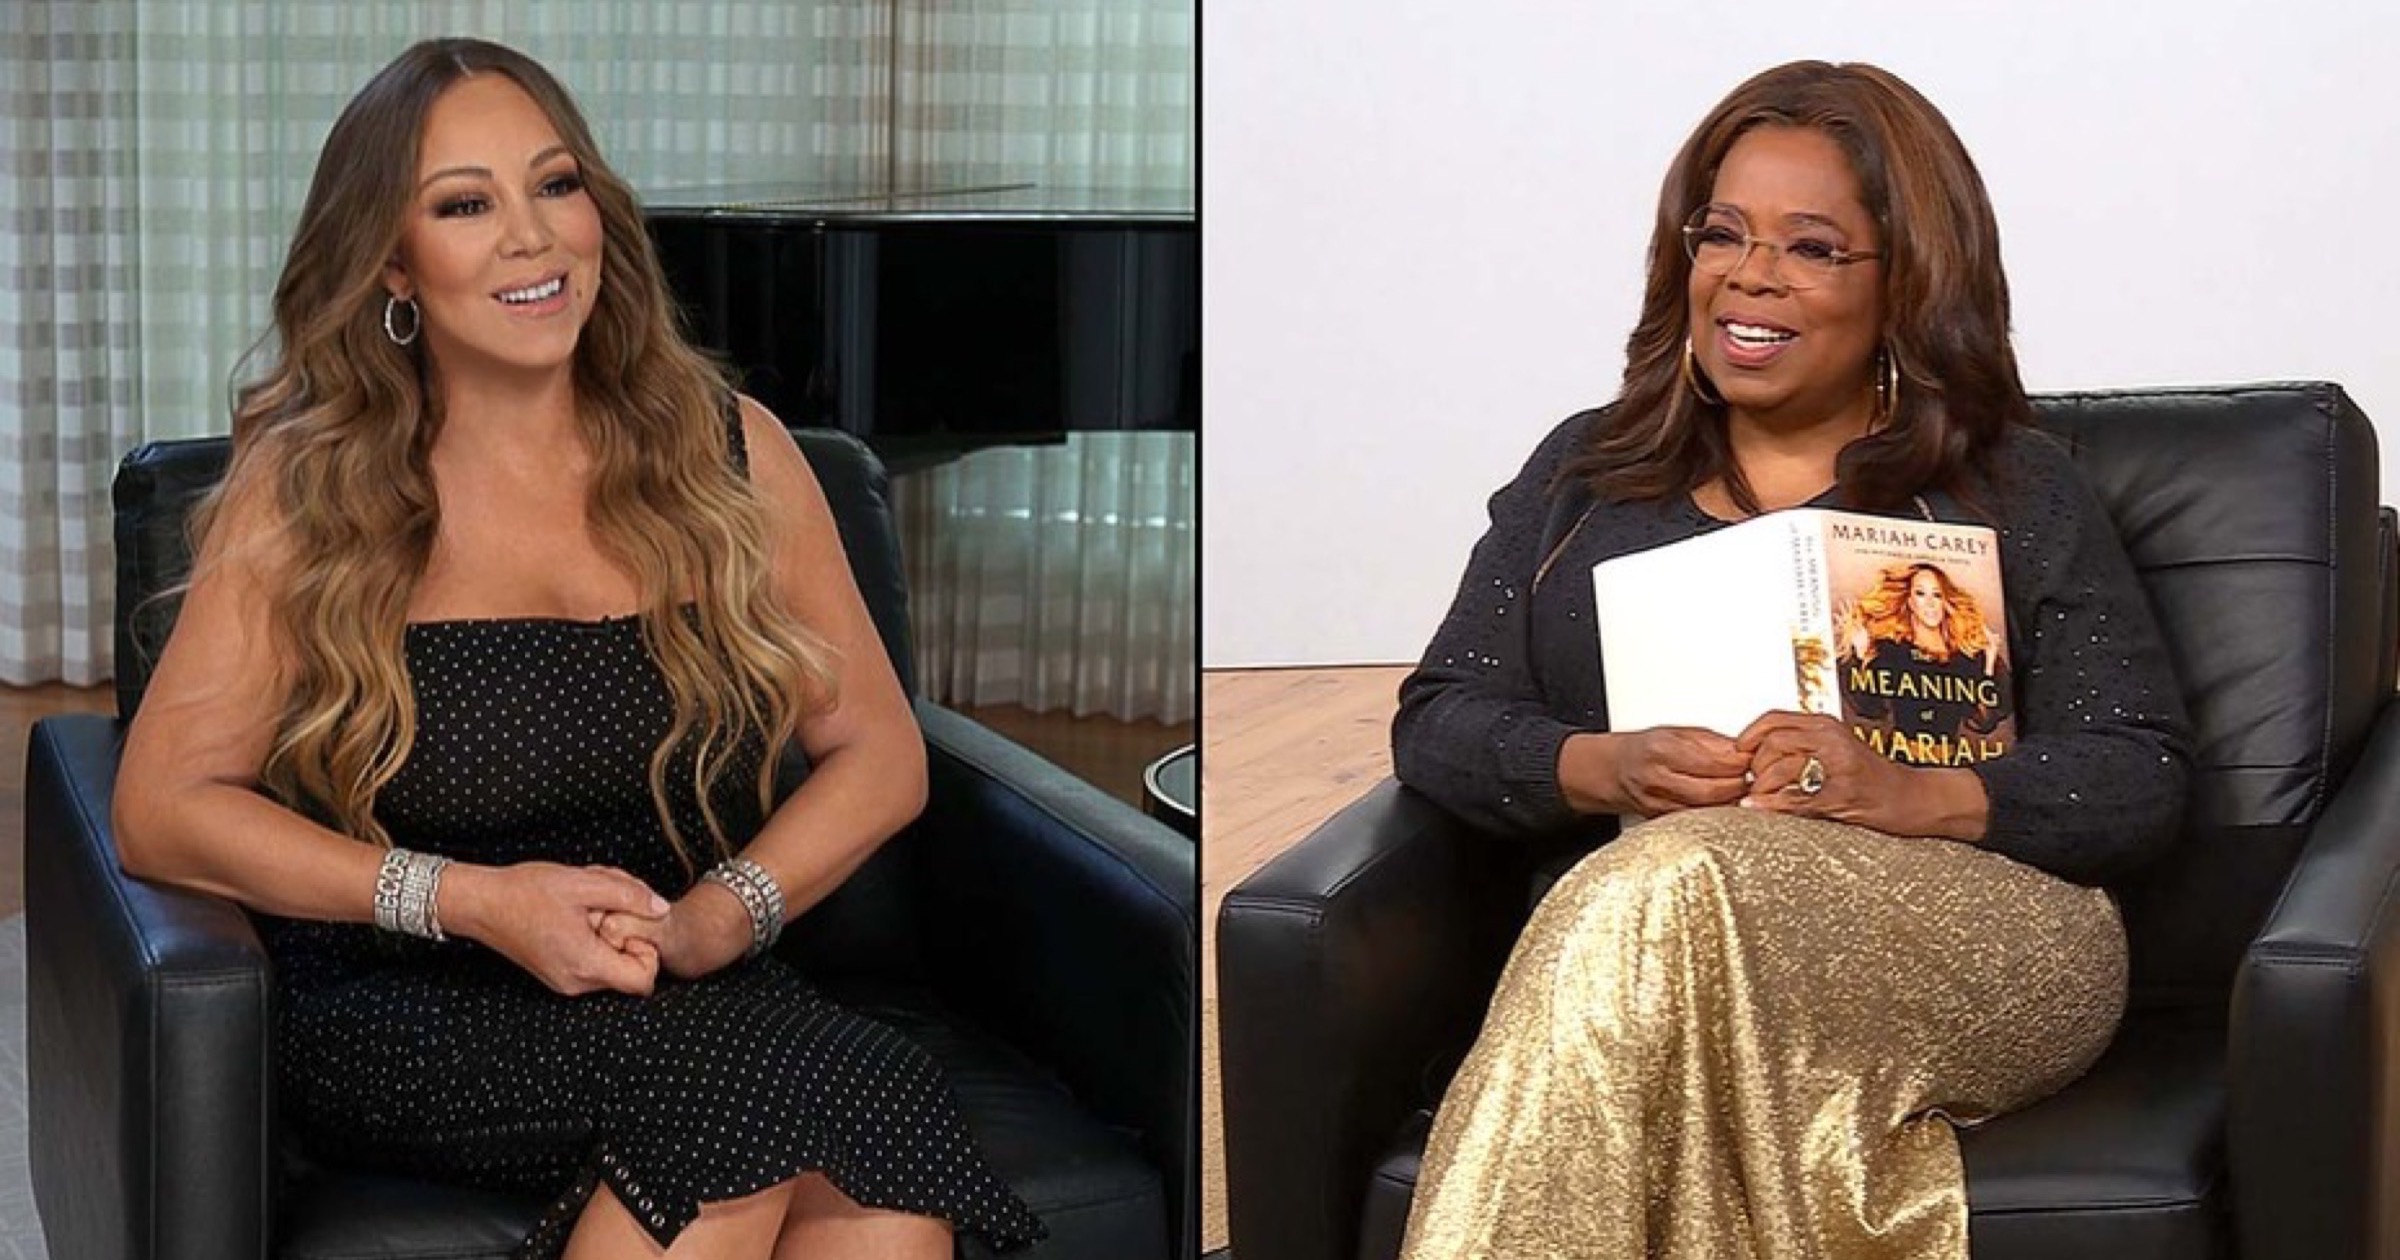 Mariah Carey and oprah Winfrey